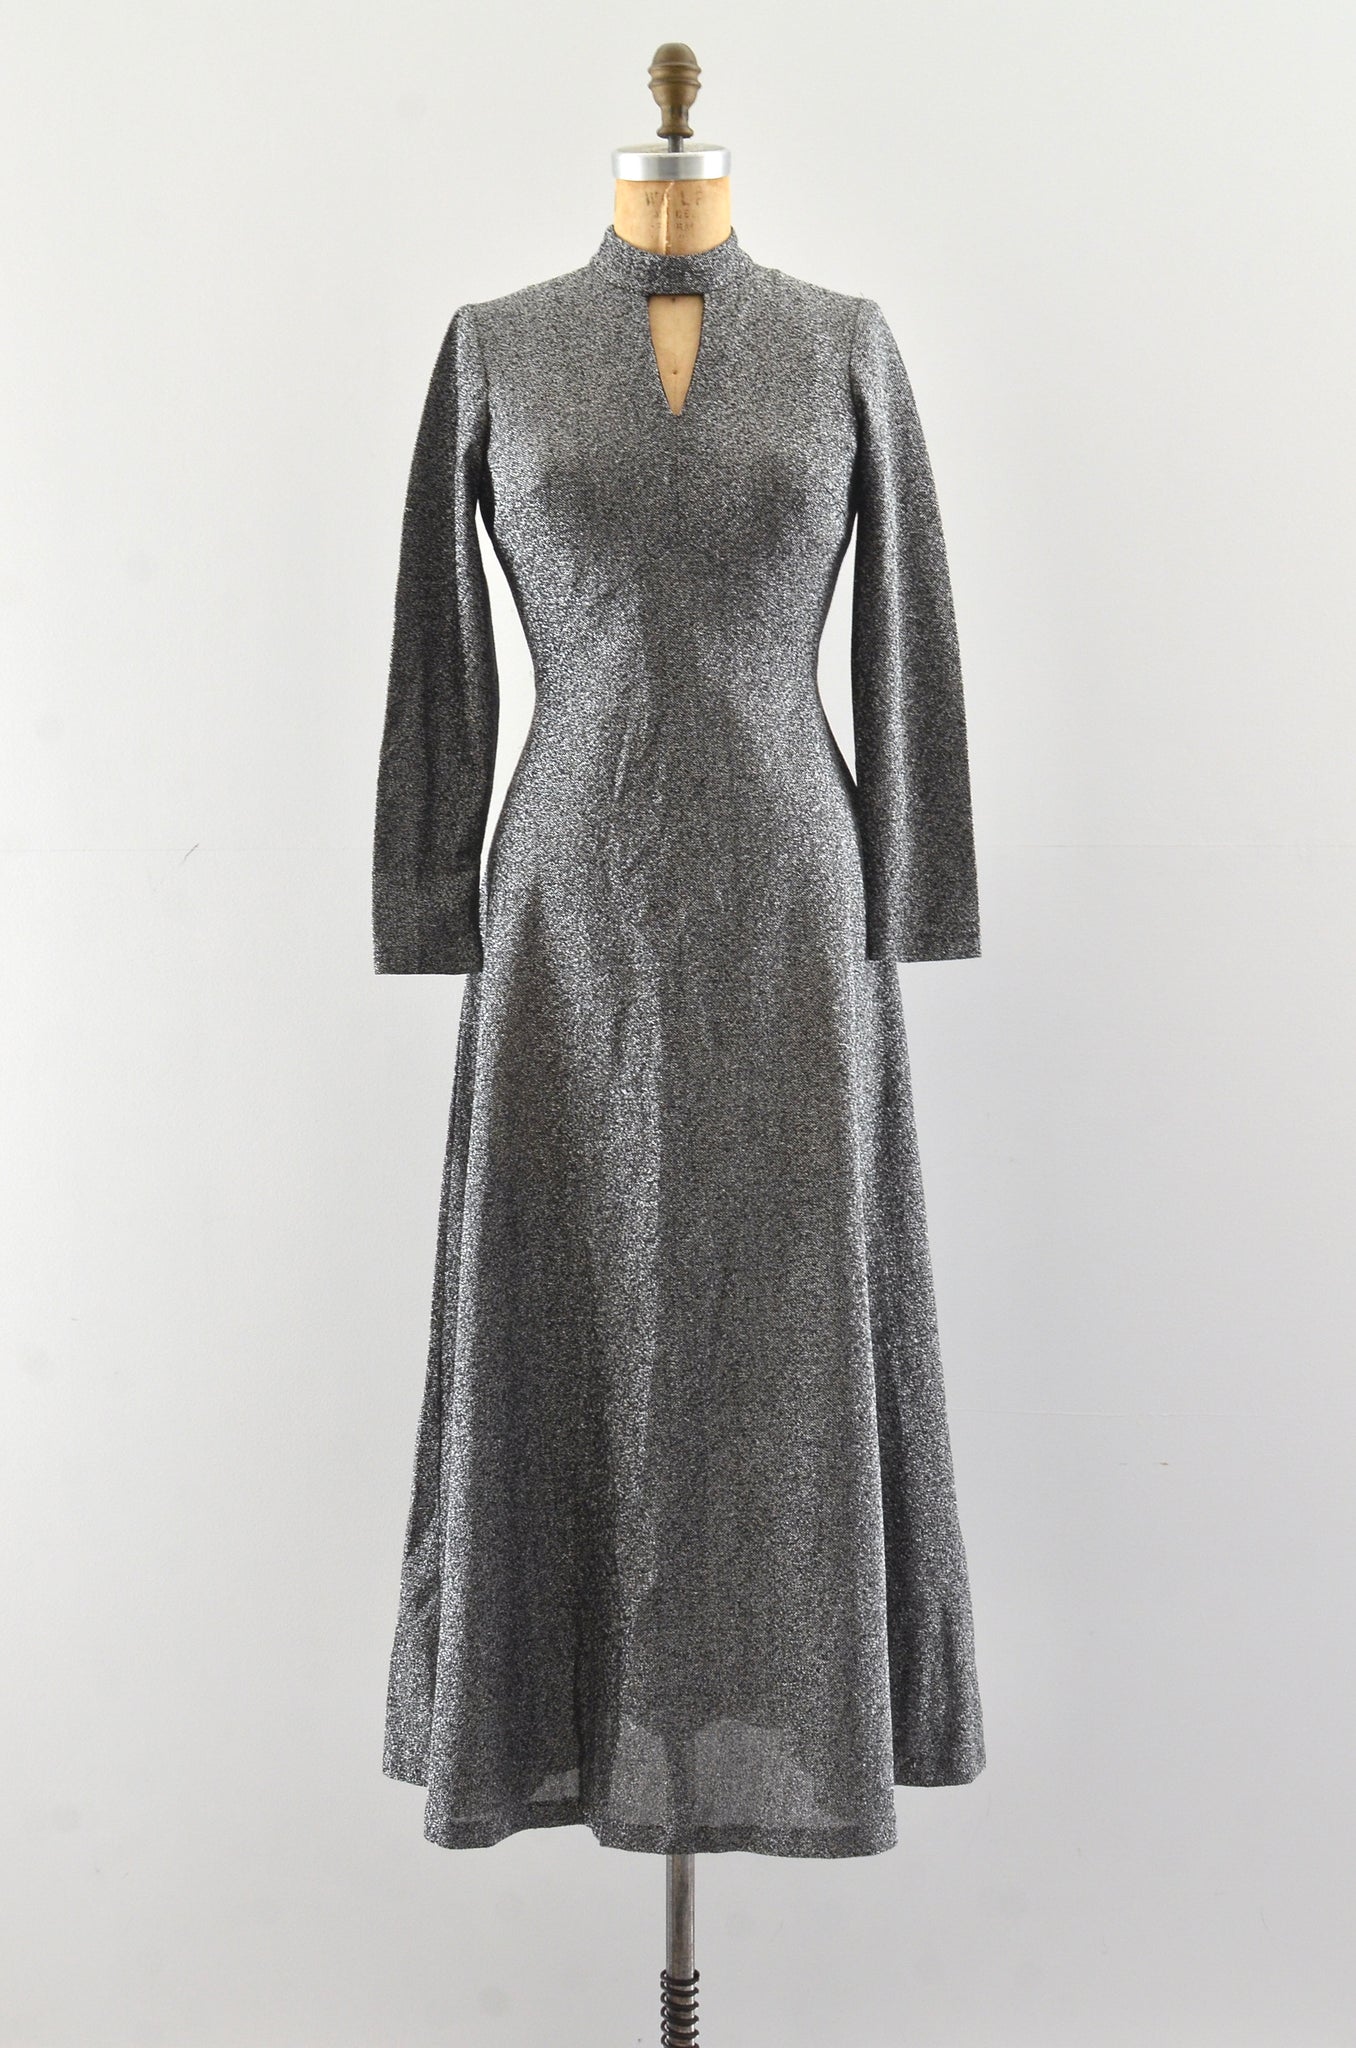 Vintage 1970's Silver Lurex Dress / XS S